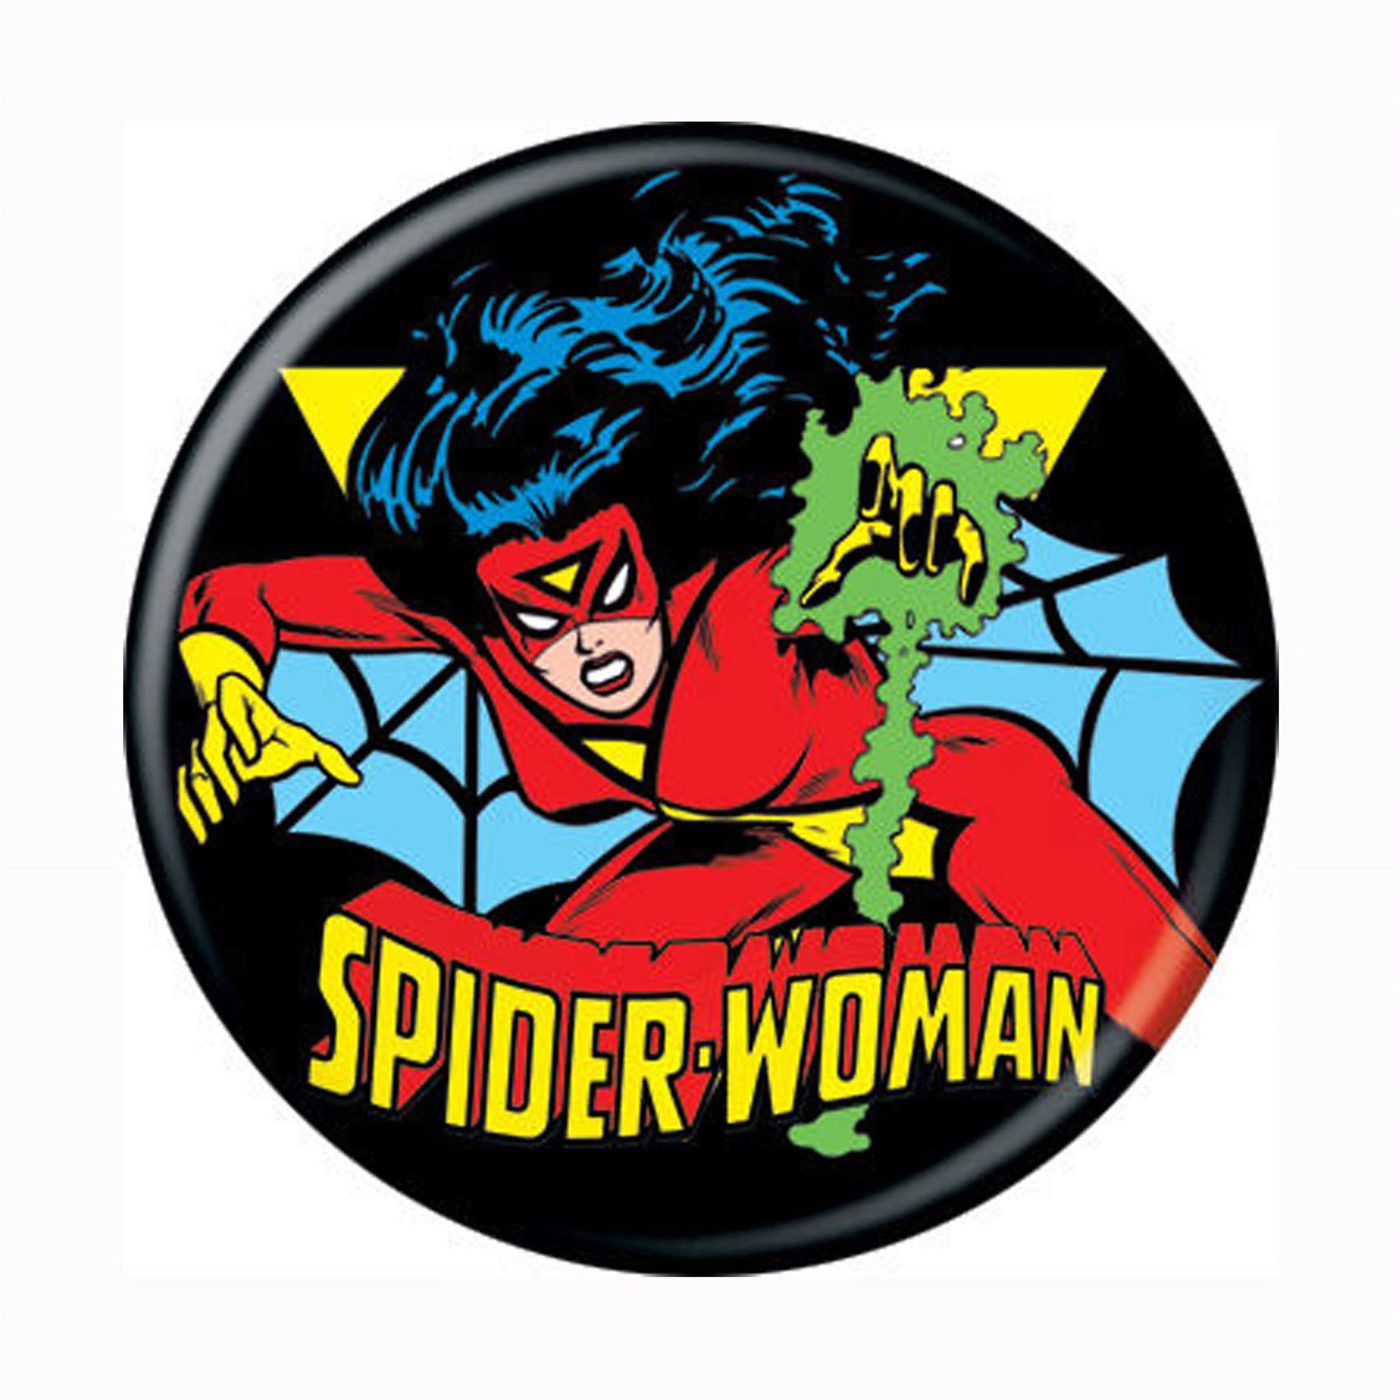 Spiderwoman Classic Button